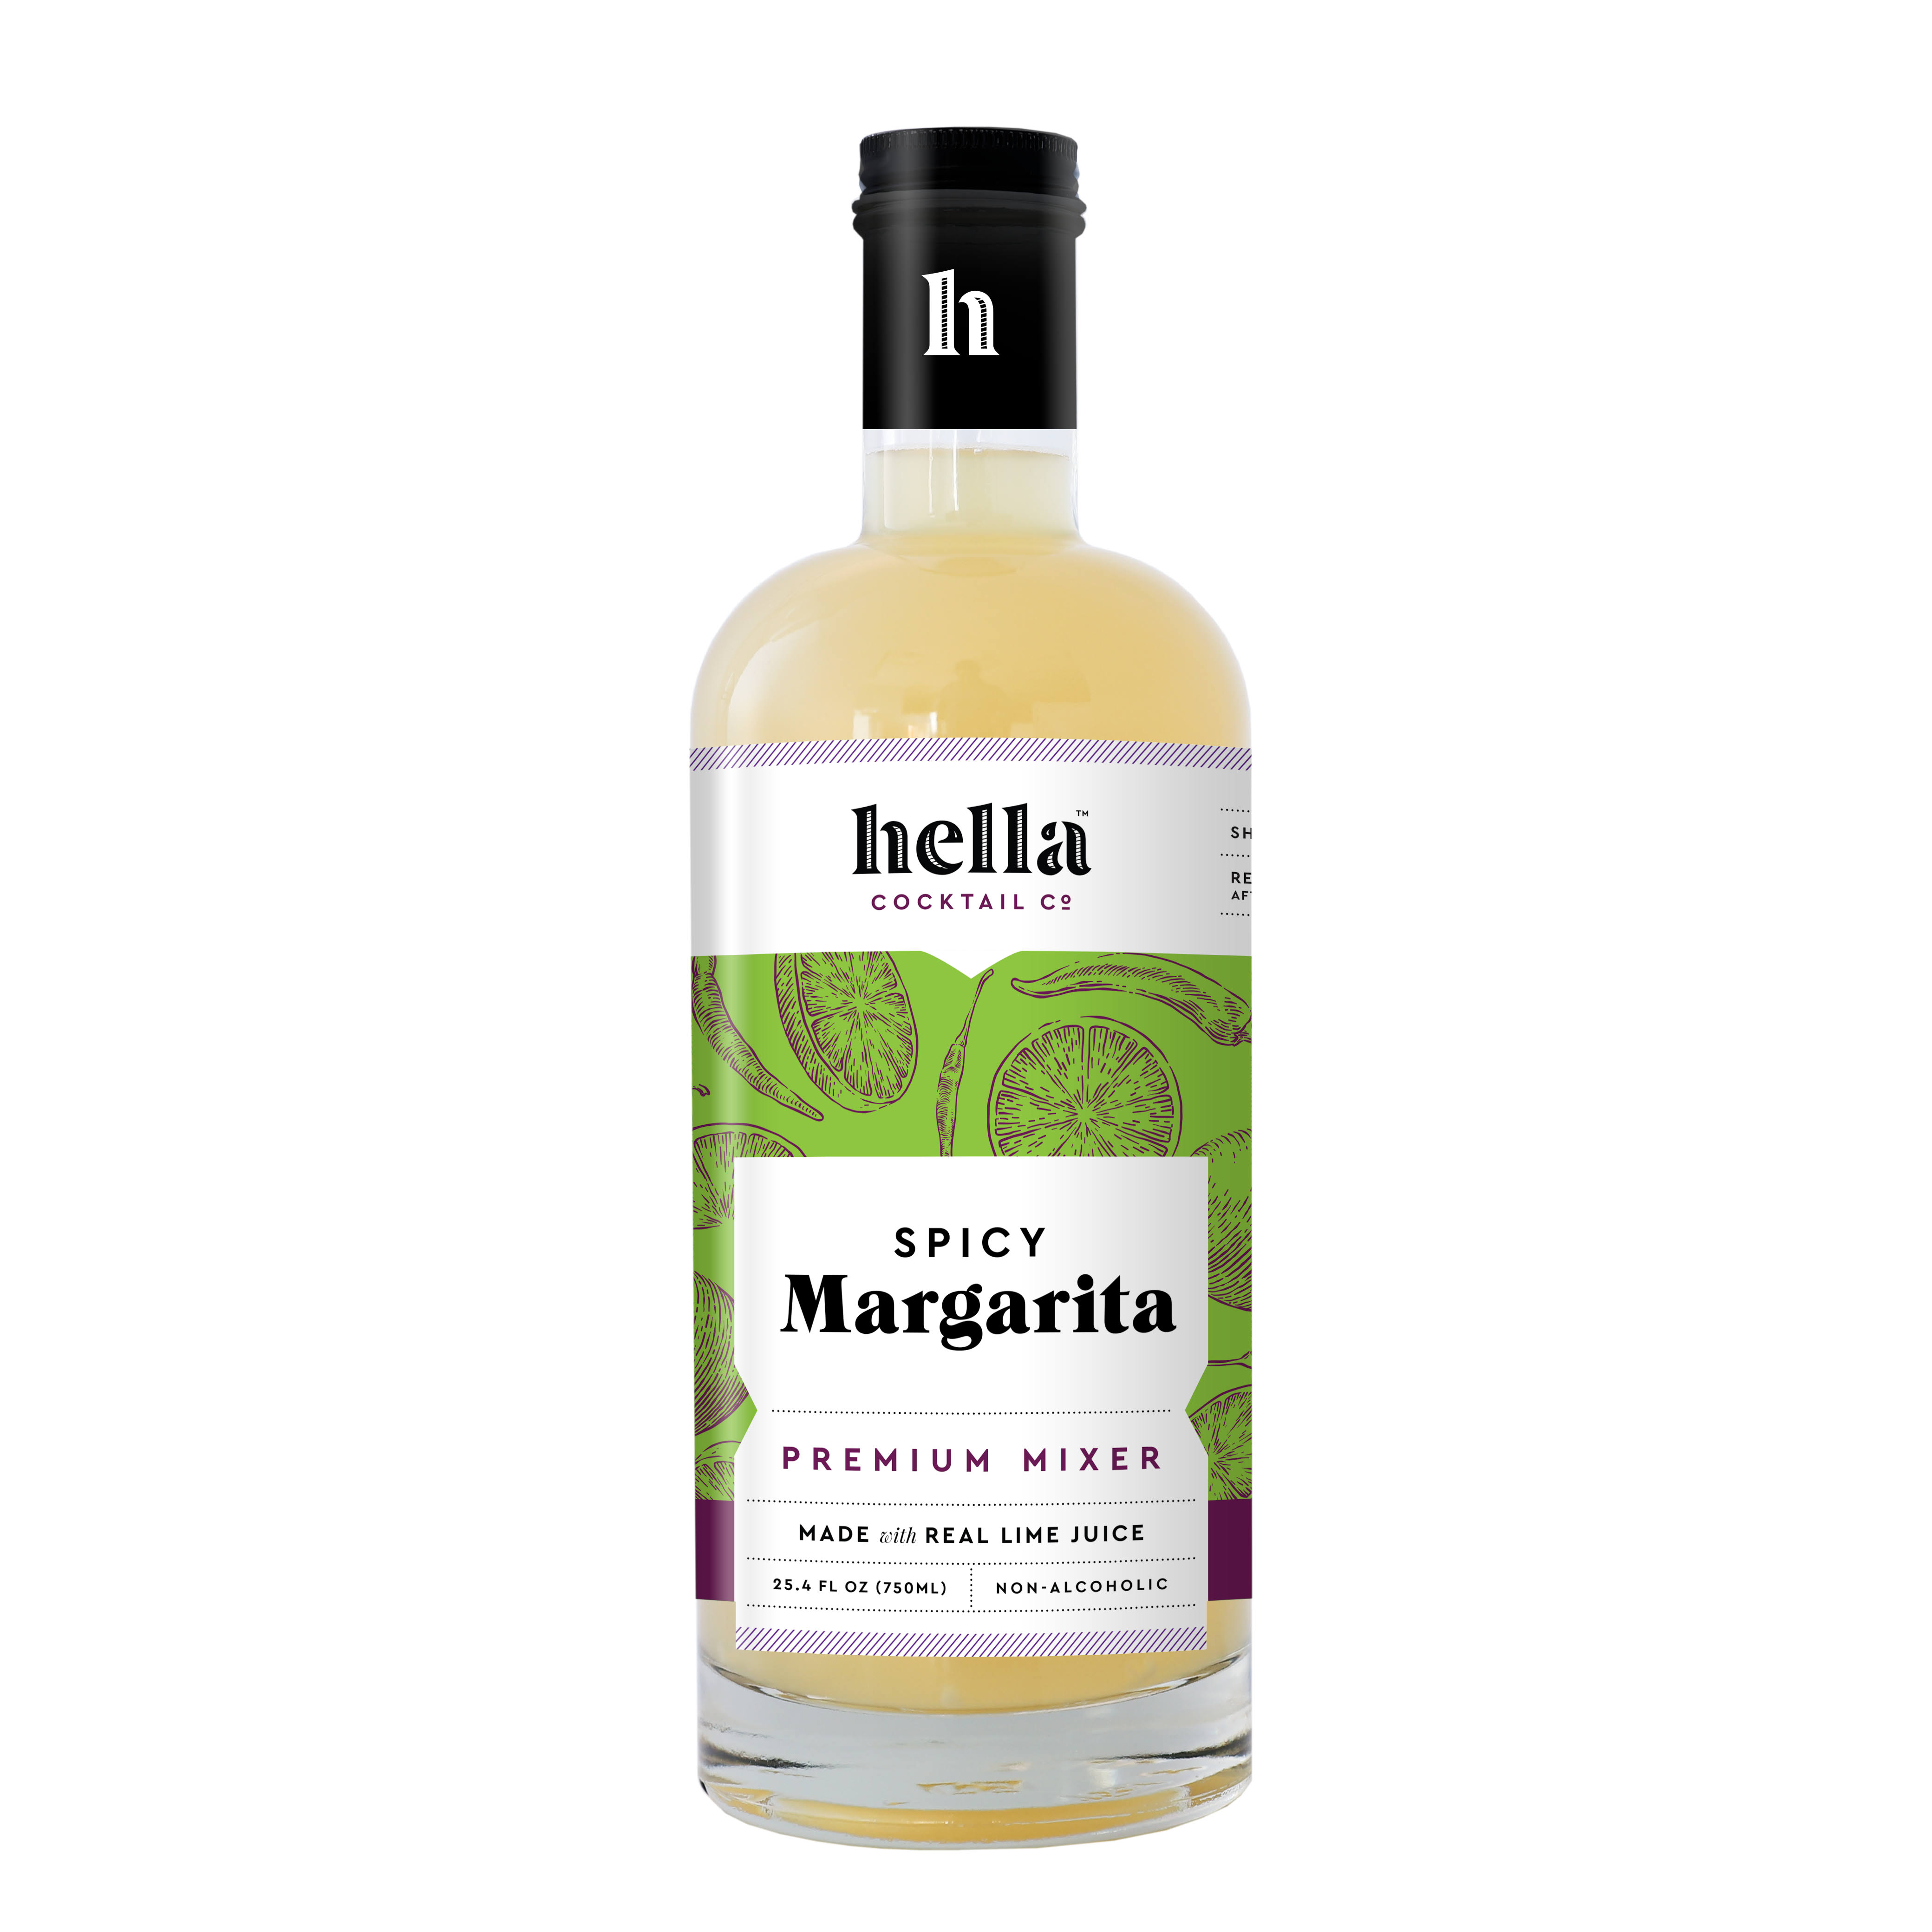 Hella Habanero Margarita Cocktail Mixer